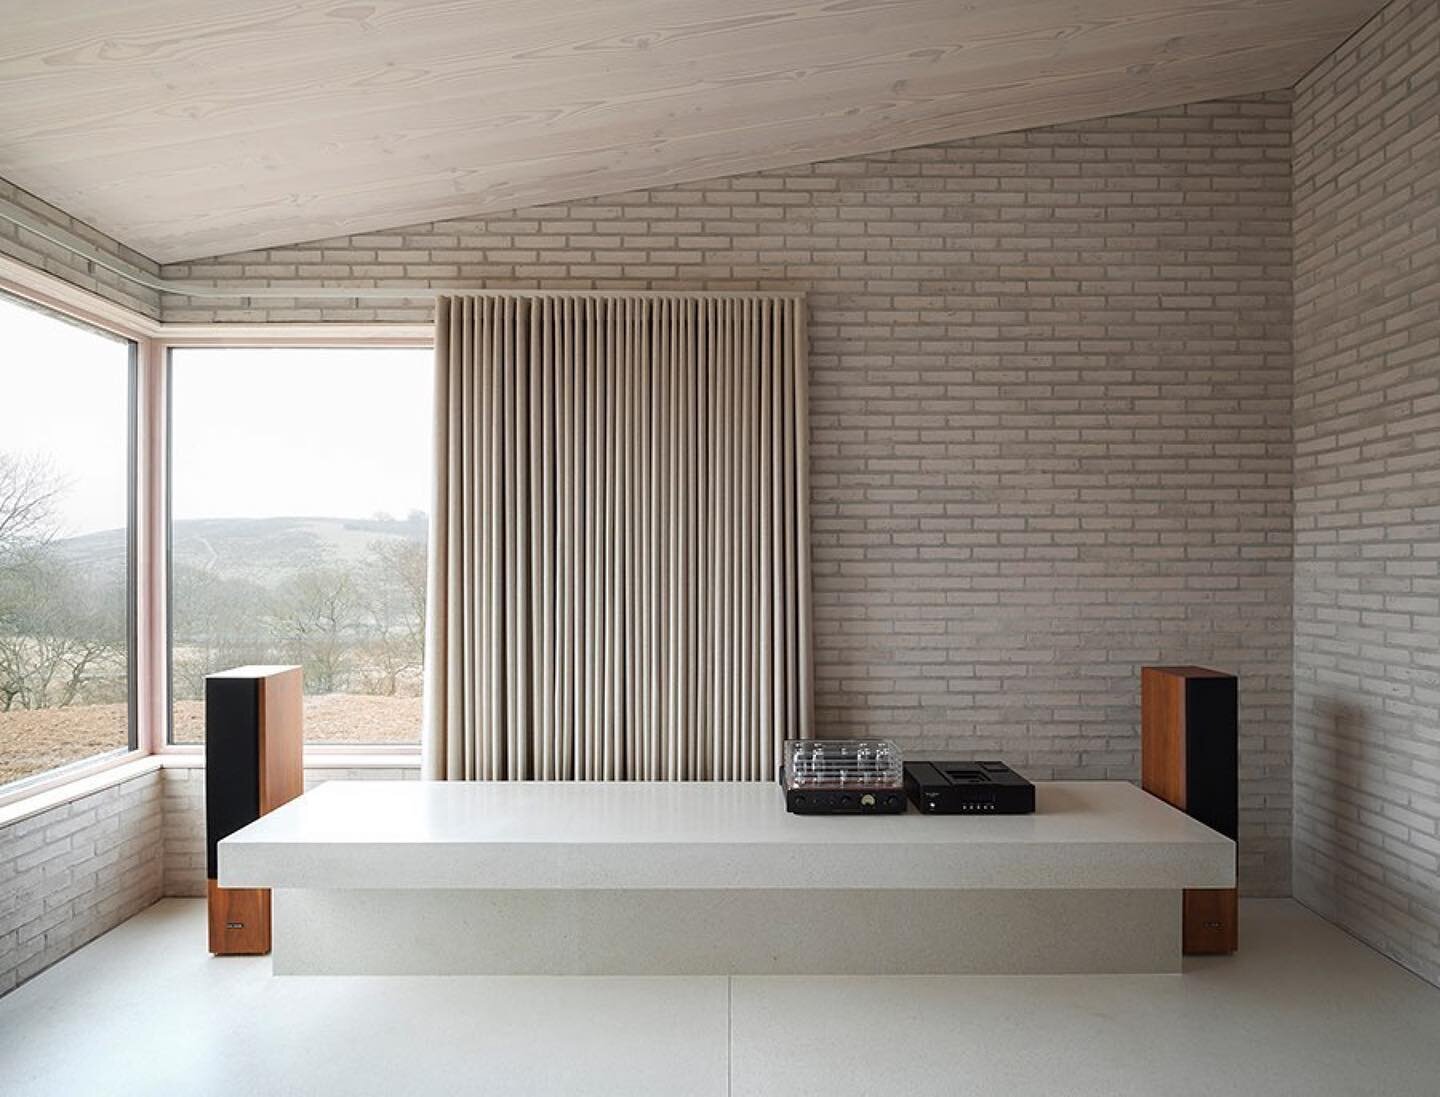 The Life House by John Pawson #modernarchitecture #johnpawson #minimalism